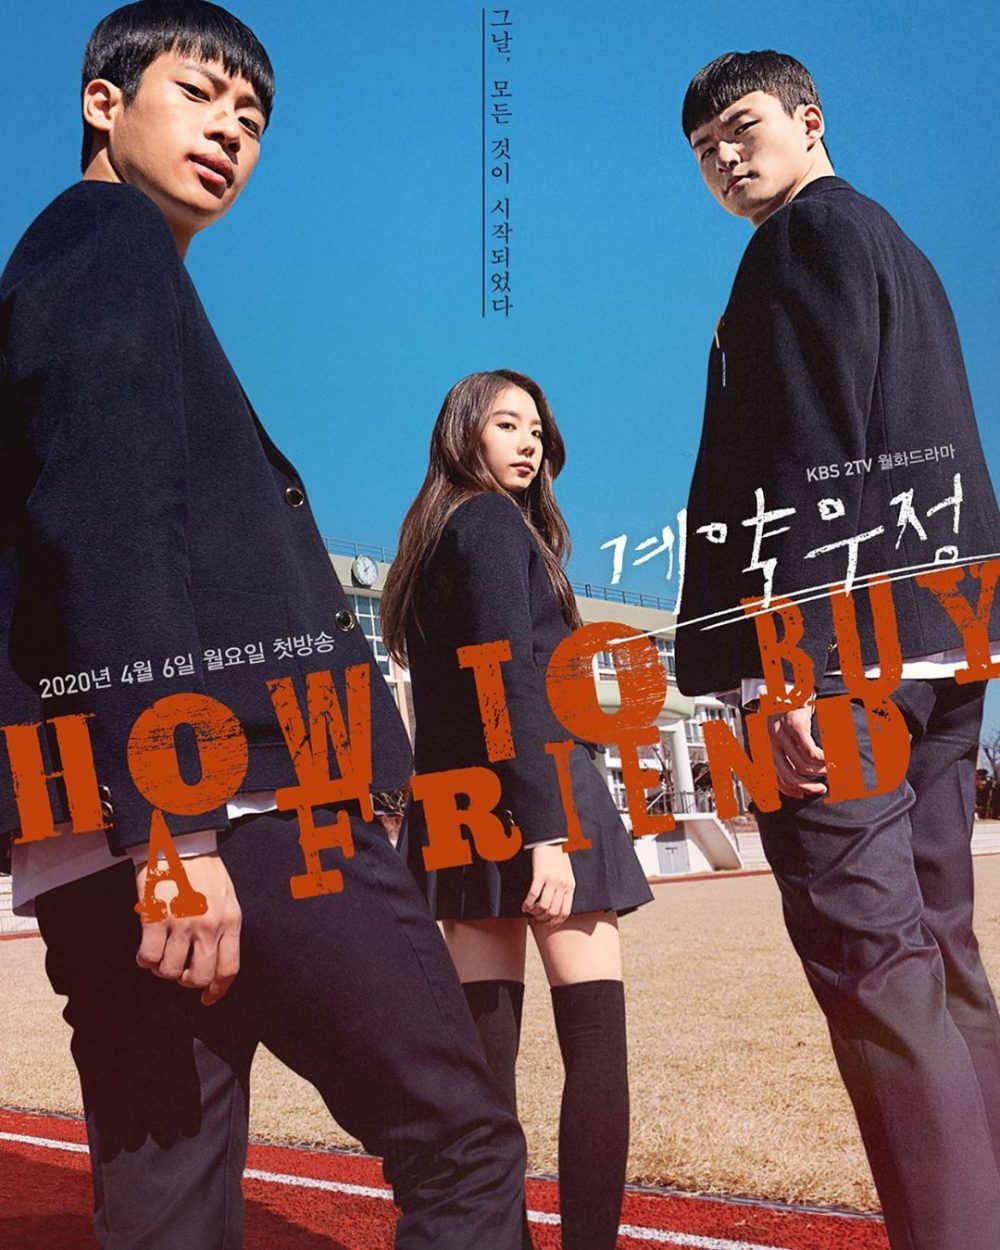 Phim Shin Seung Ho: Hợp đồng tình bạn - How to Buy a Friend (2020)